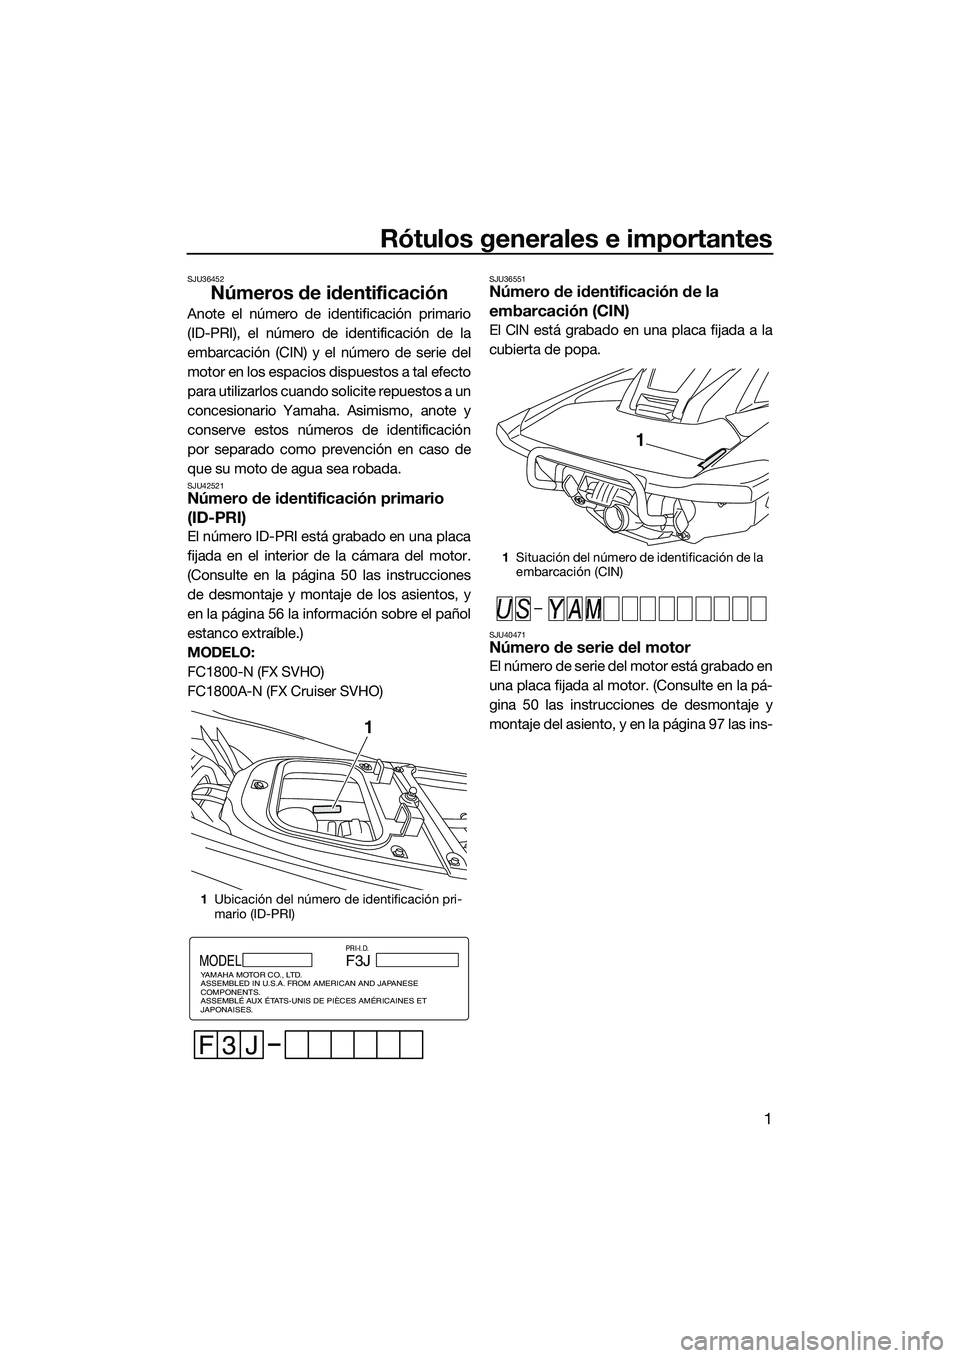 YAMAHA FX SVHO 2014  Manuale de Empleo (in Spanish) Rótulos generales e importantes
1
SJU36452
Números de identificación
Anote el número de identificación primario
(ID-PRI), el número de identificación de la
embarcación (CIN) y el número de se